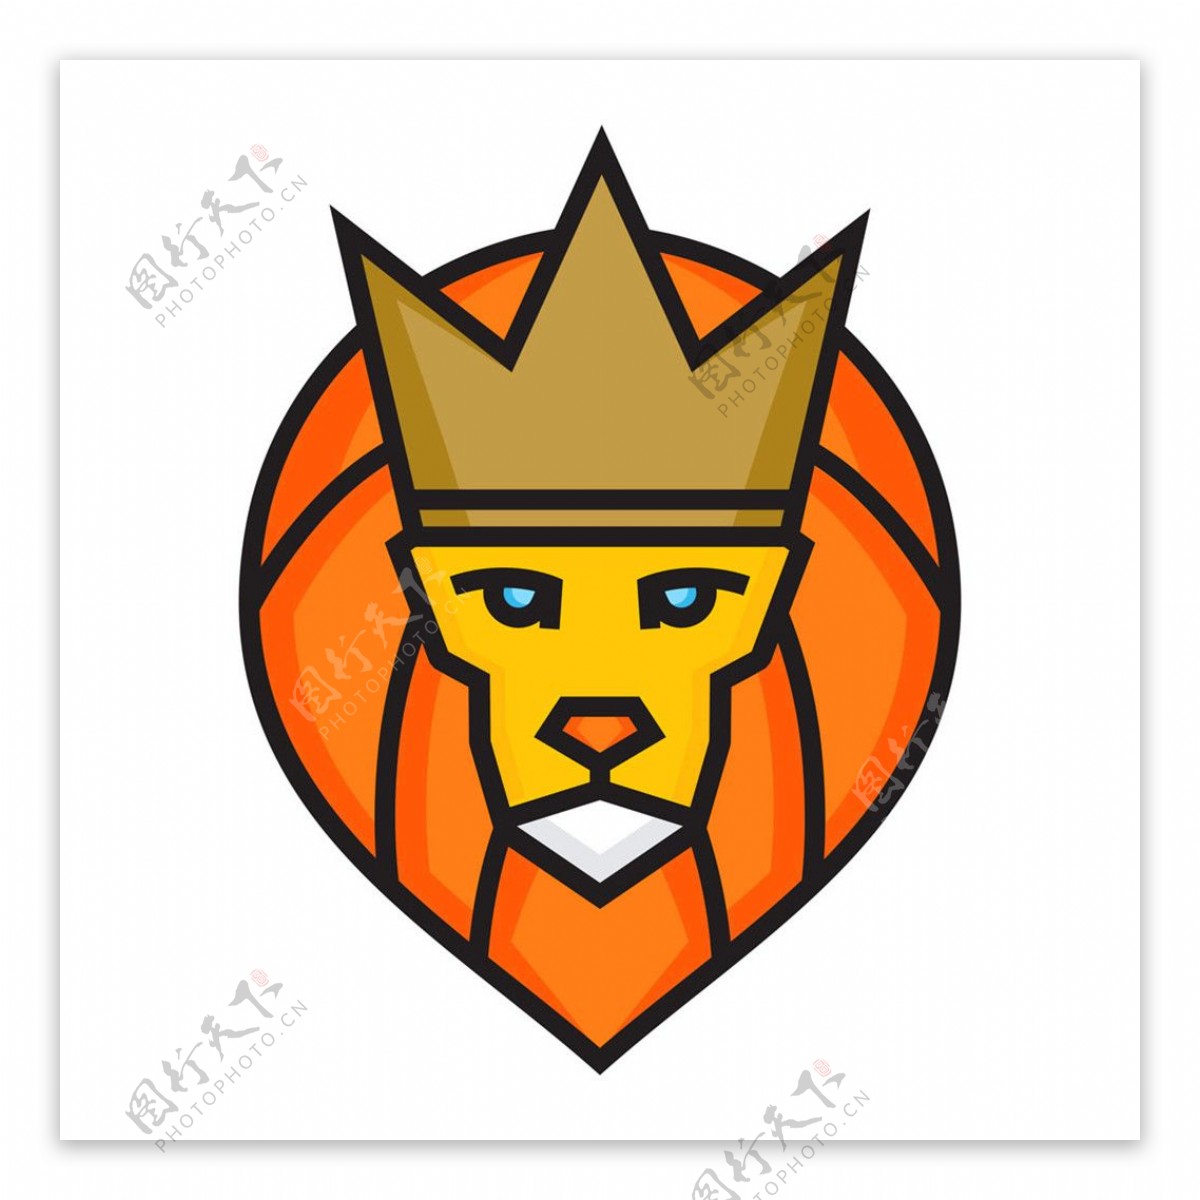 皇冠狮子标志图片